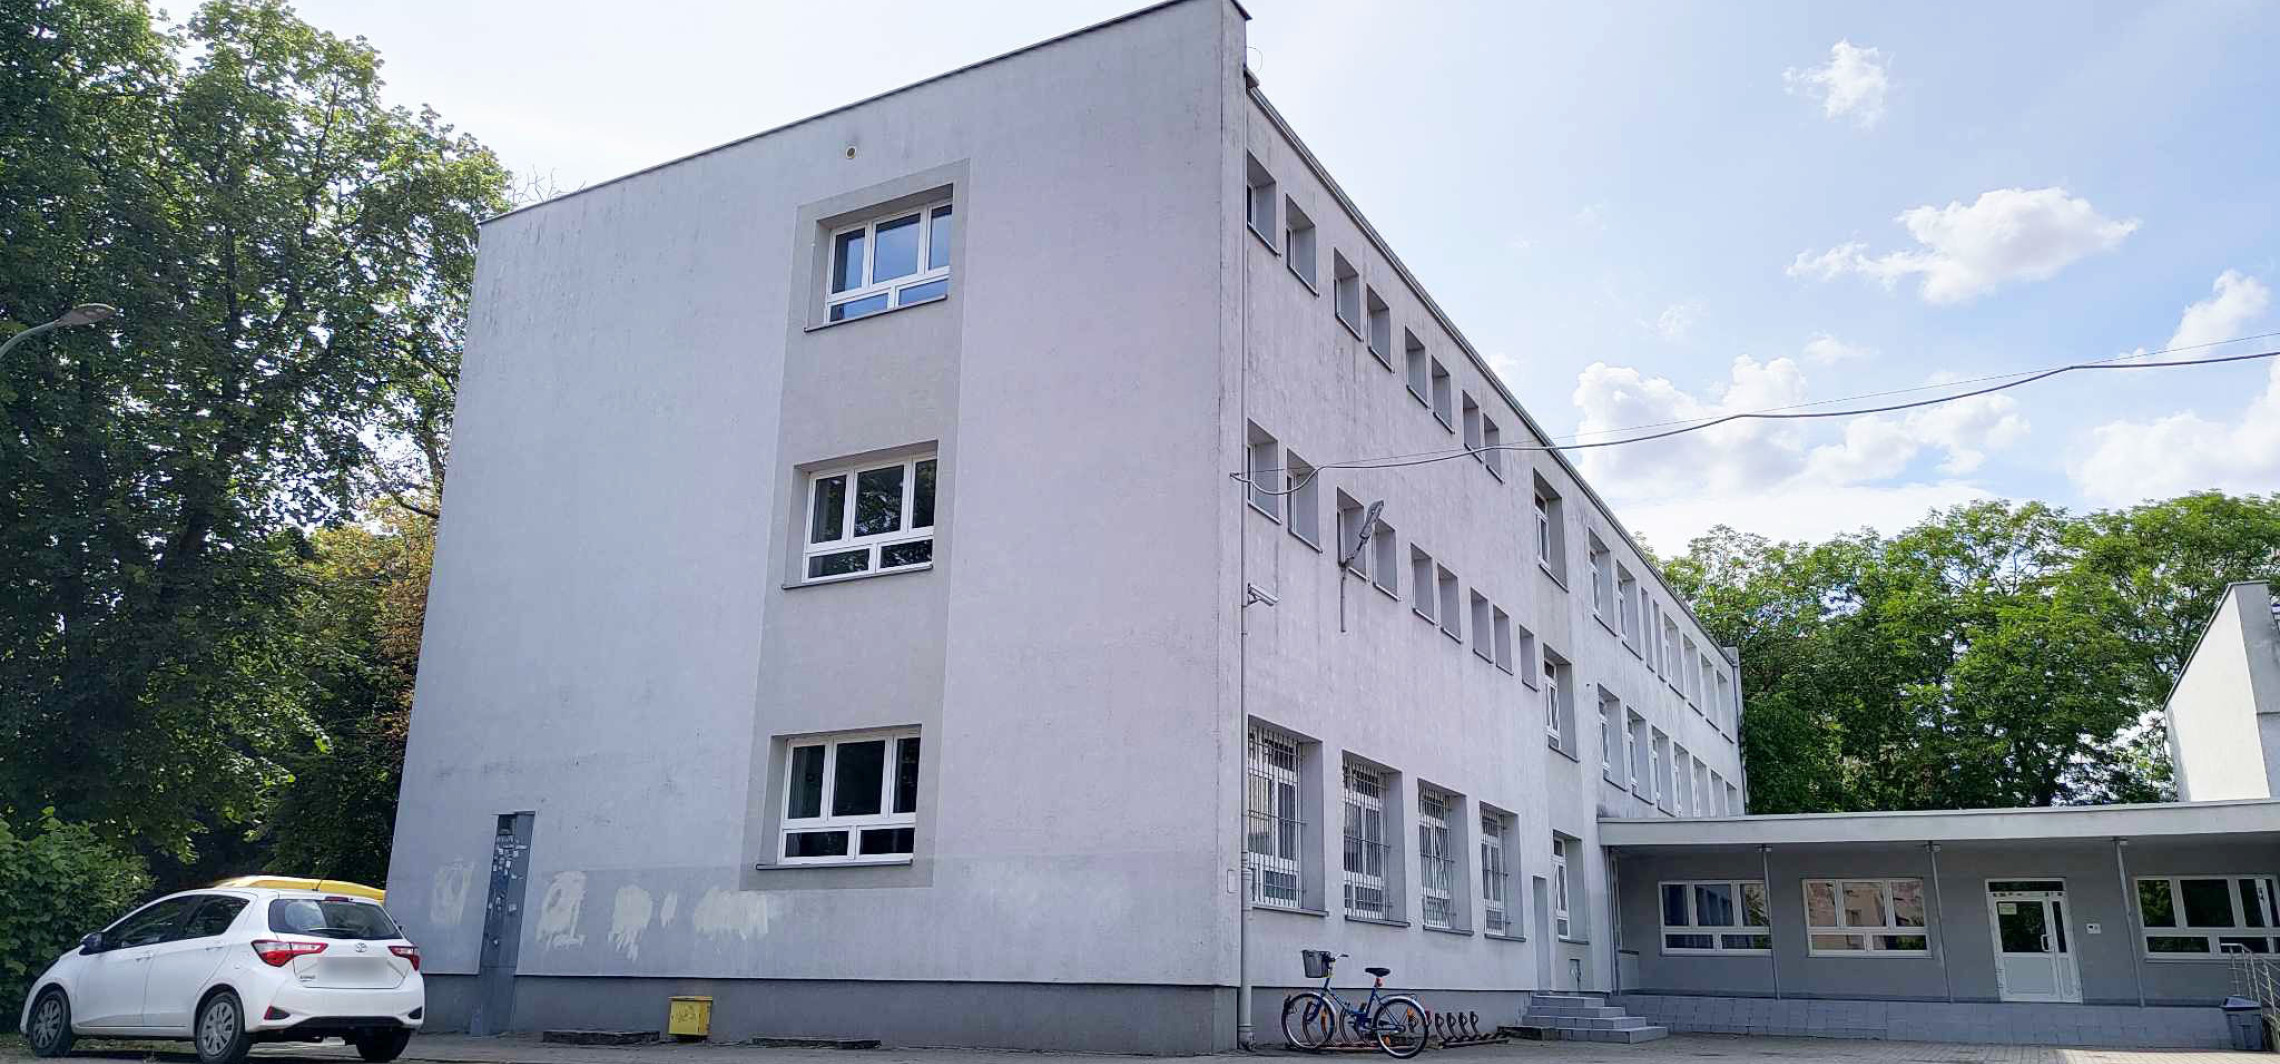 Inowrocław - Niebawem na ścianie tej szkoły powstanie mural